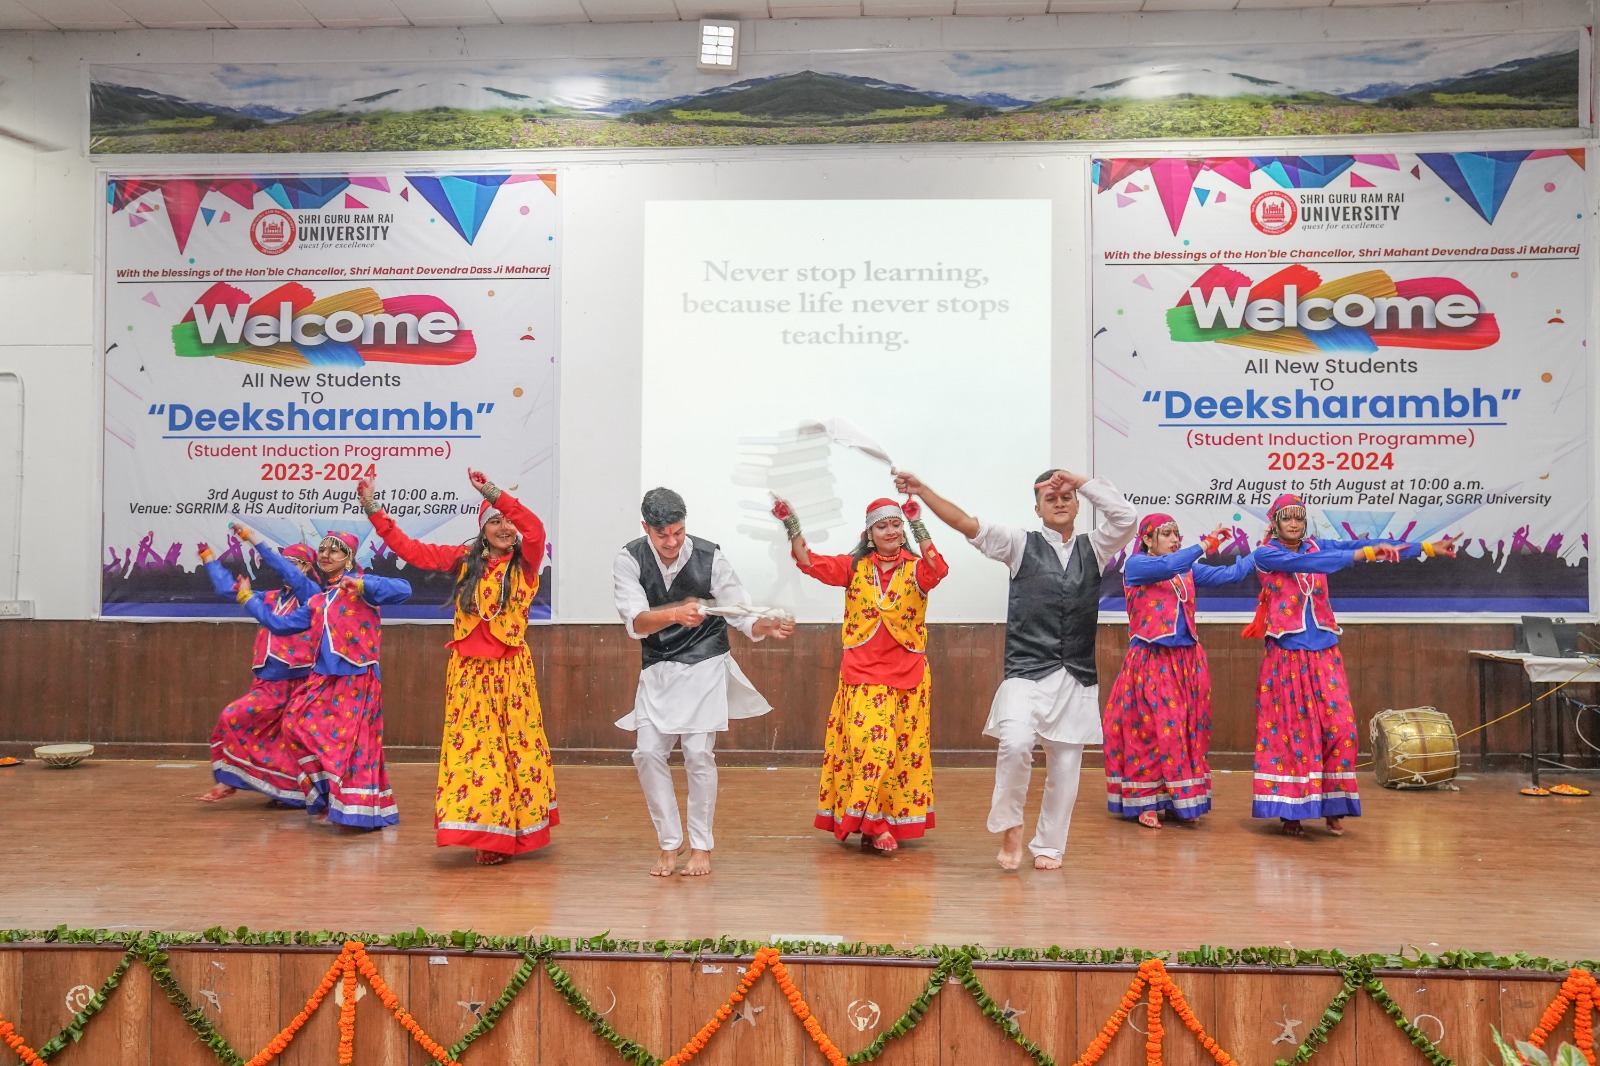 श्री गुरु राम राय विश्वविद्यालय के दीक्षारंभ कार्यक्रम का दूसरे दिन दिखी उत्तराखण्ड के पारंपरिक लोकगीतों की झलक, नव प्रवेशी छात्र-छात्राओं ने उठाया सांस्कृतिक कार्यक्रमों का आनंद